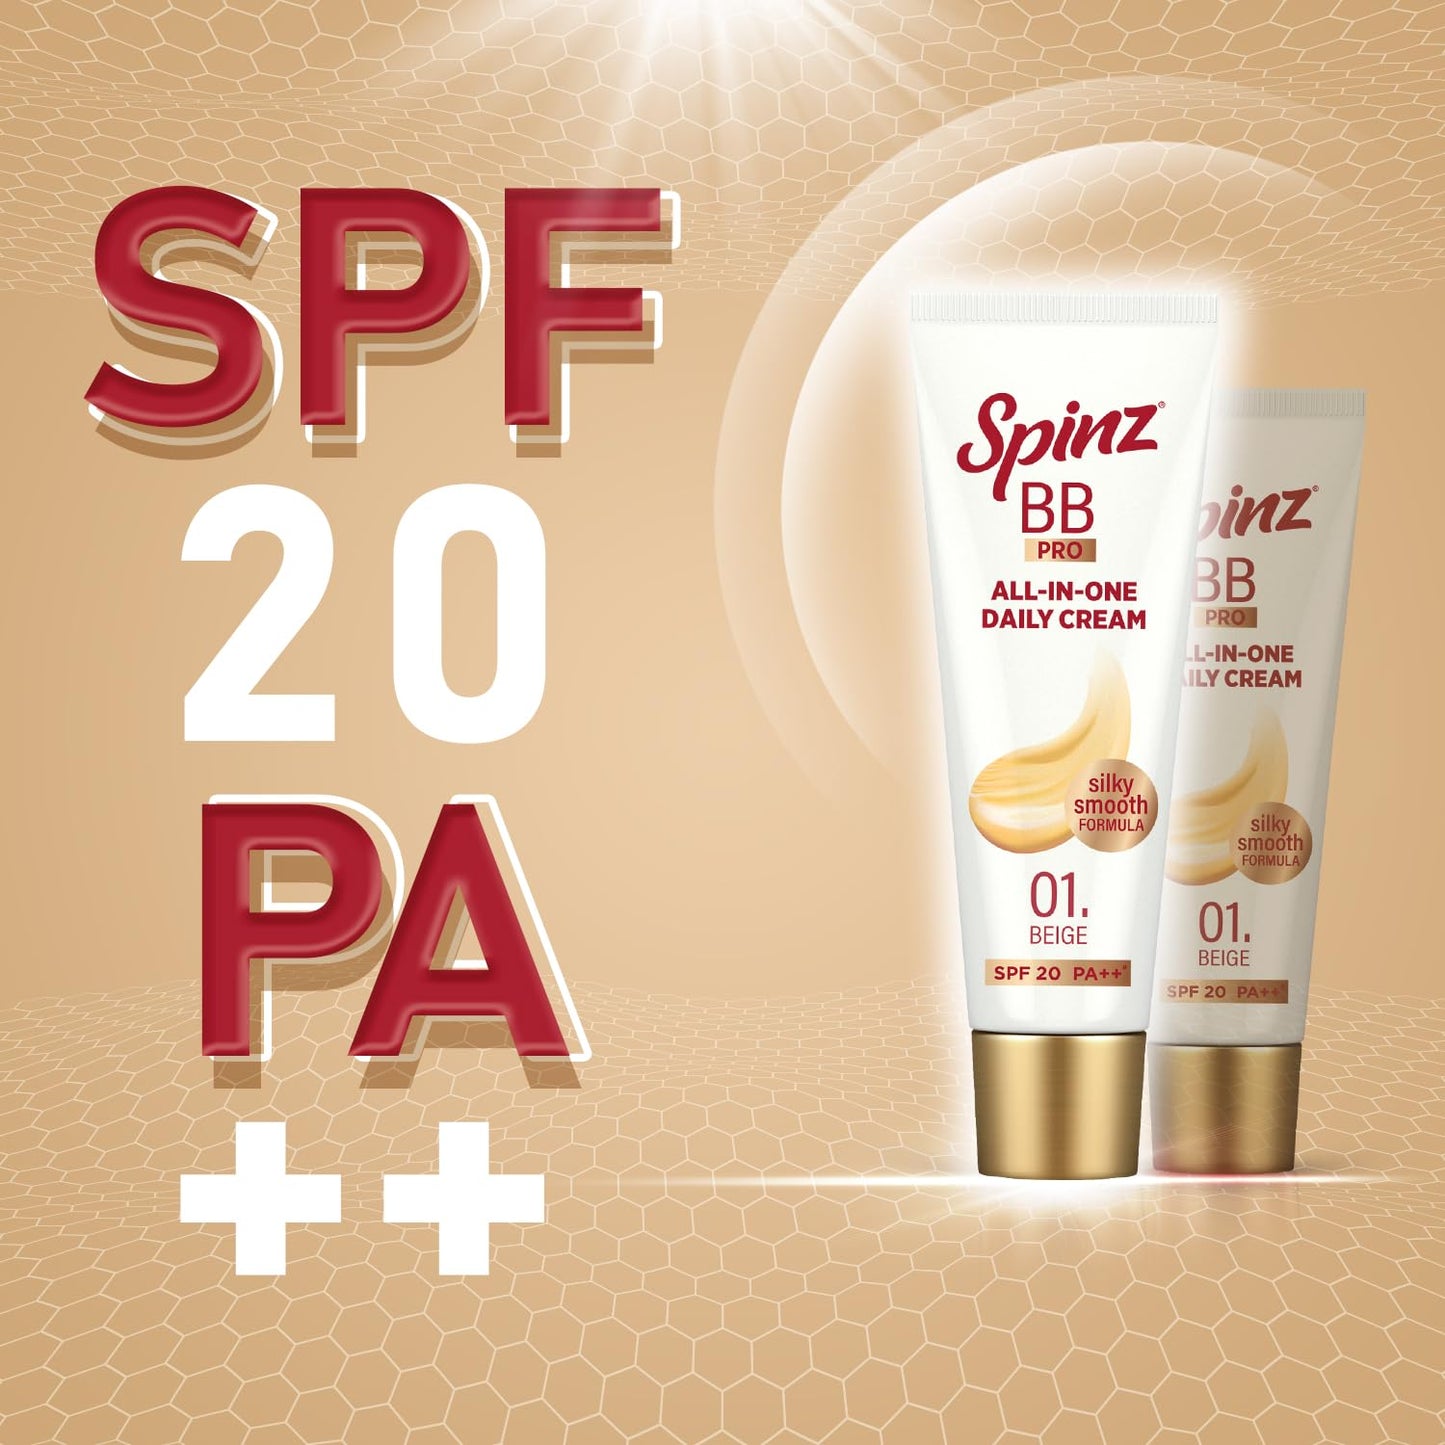 Spinz BB Brightening & Beauty Fairness Cream 29gm Pack Of 3